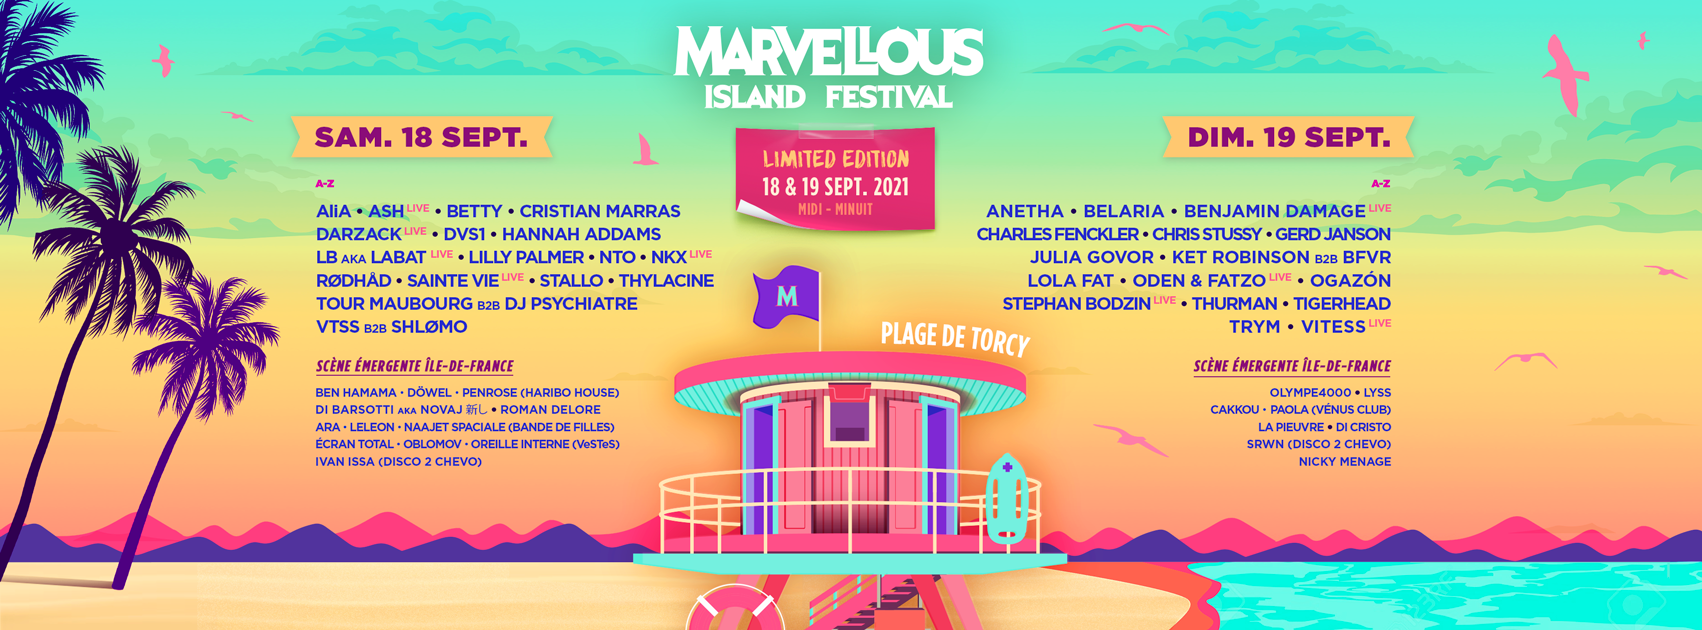 Le Marvellous Island Festival revient en 2021 avec une « Limited Edition » !